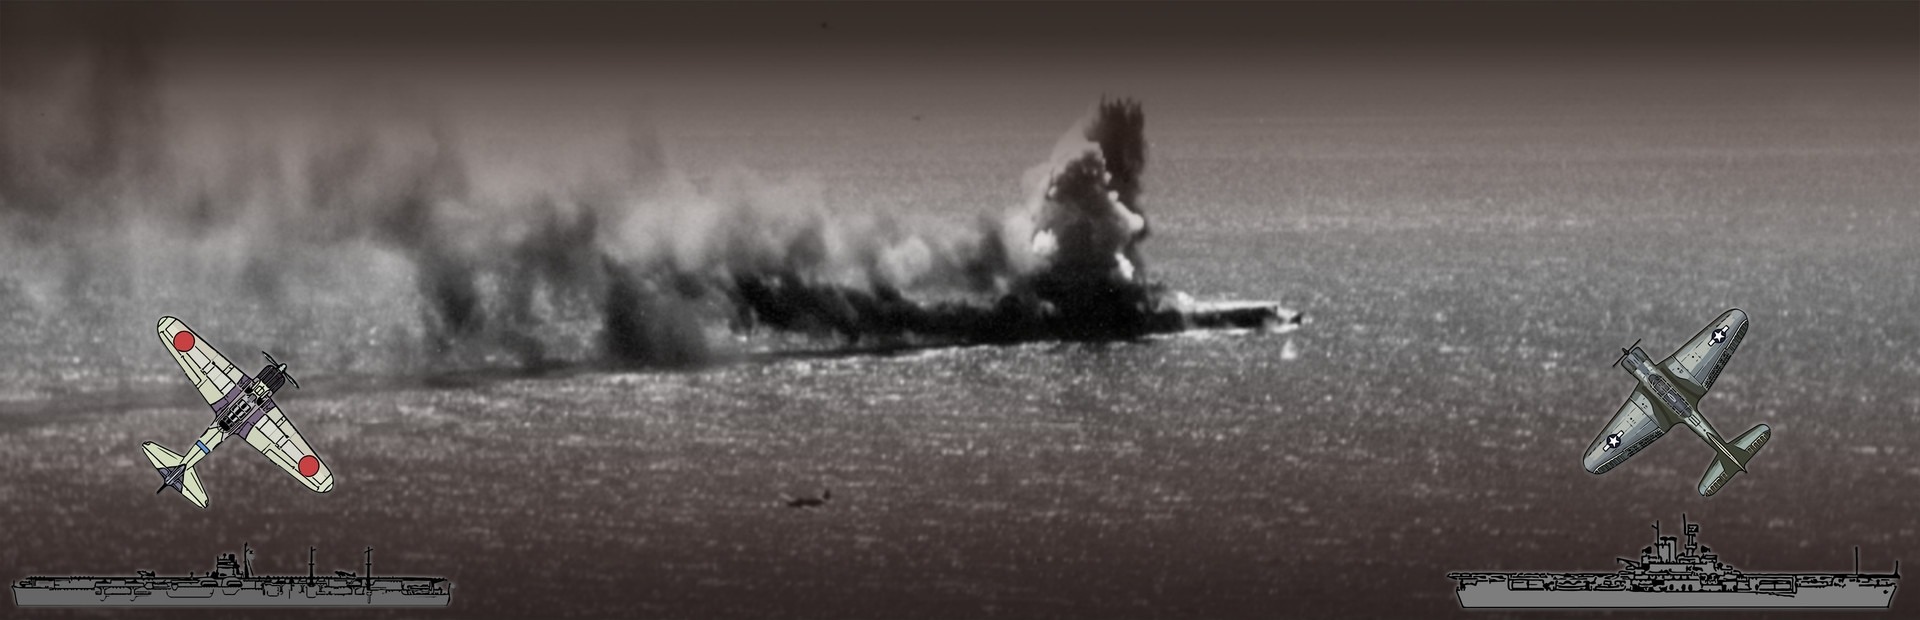 Carrier Battles 4 Guadalcanal - Guerra Naval en el Pacifico